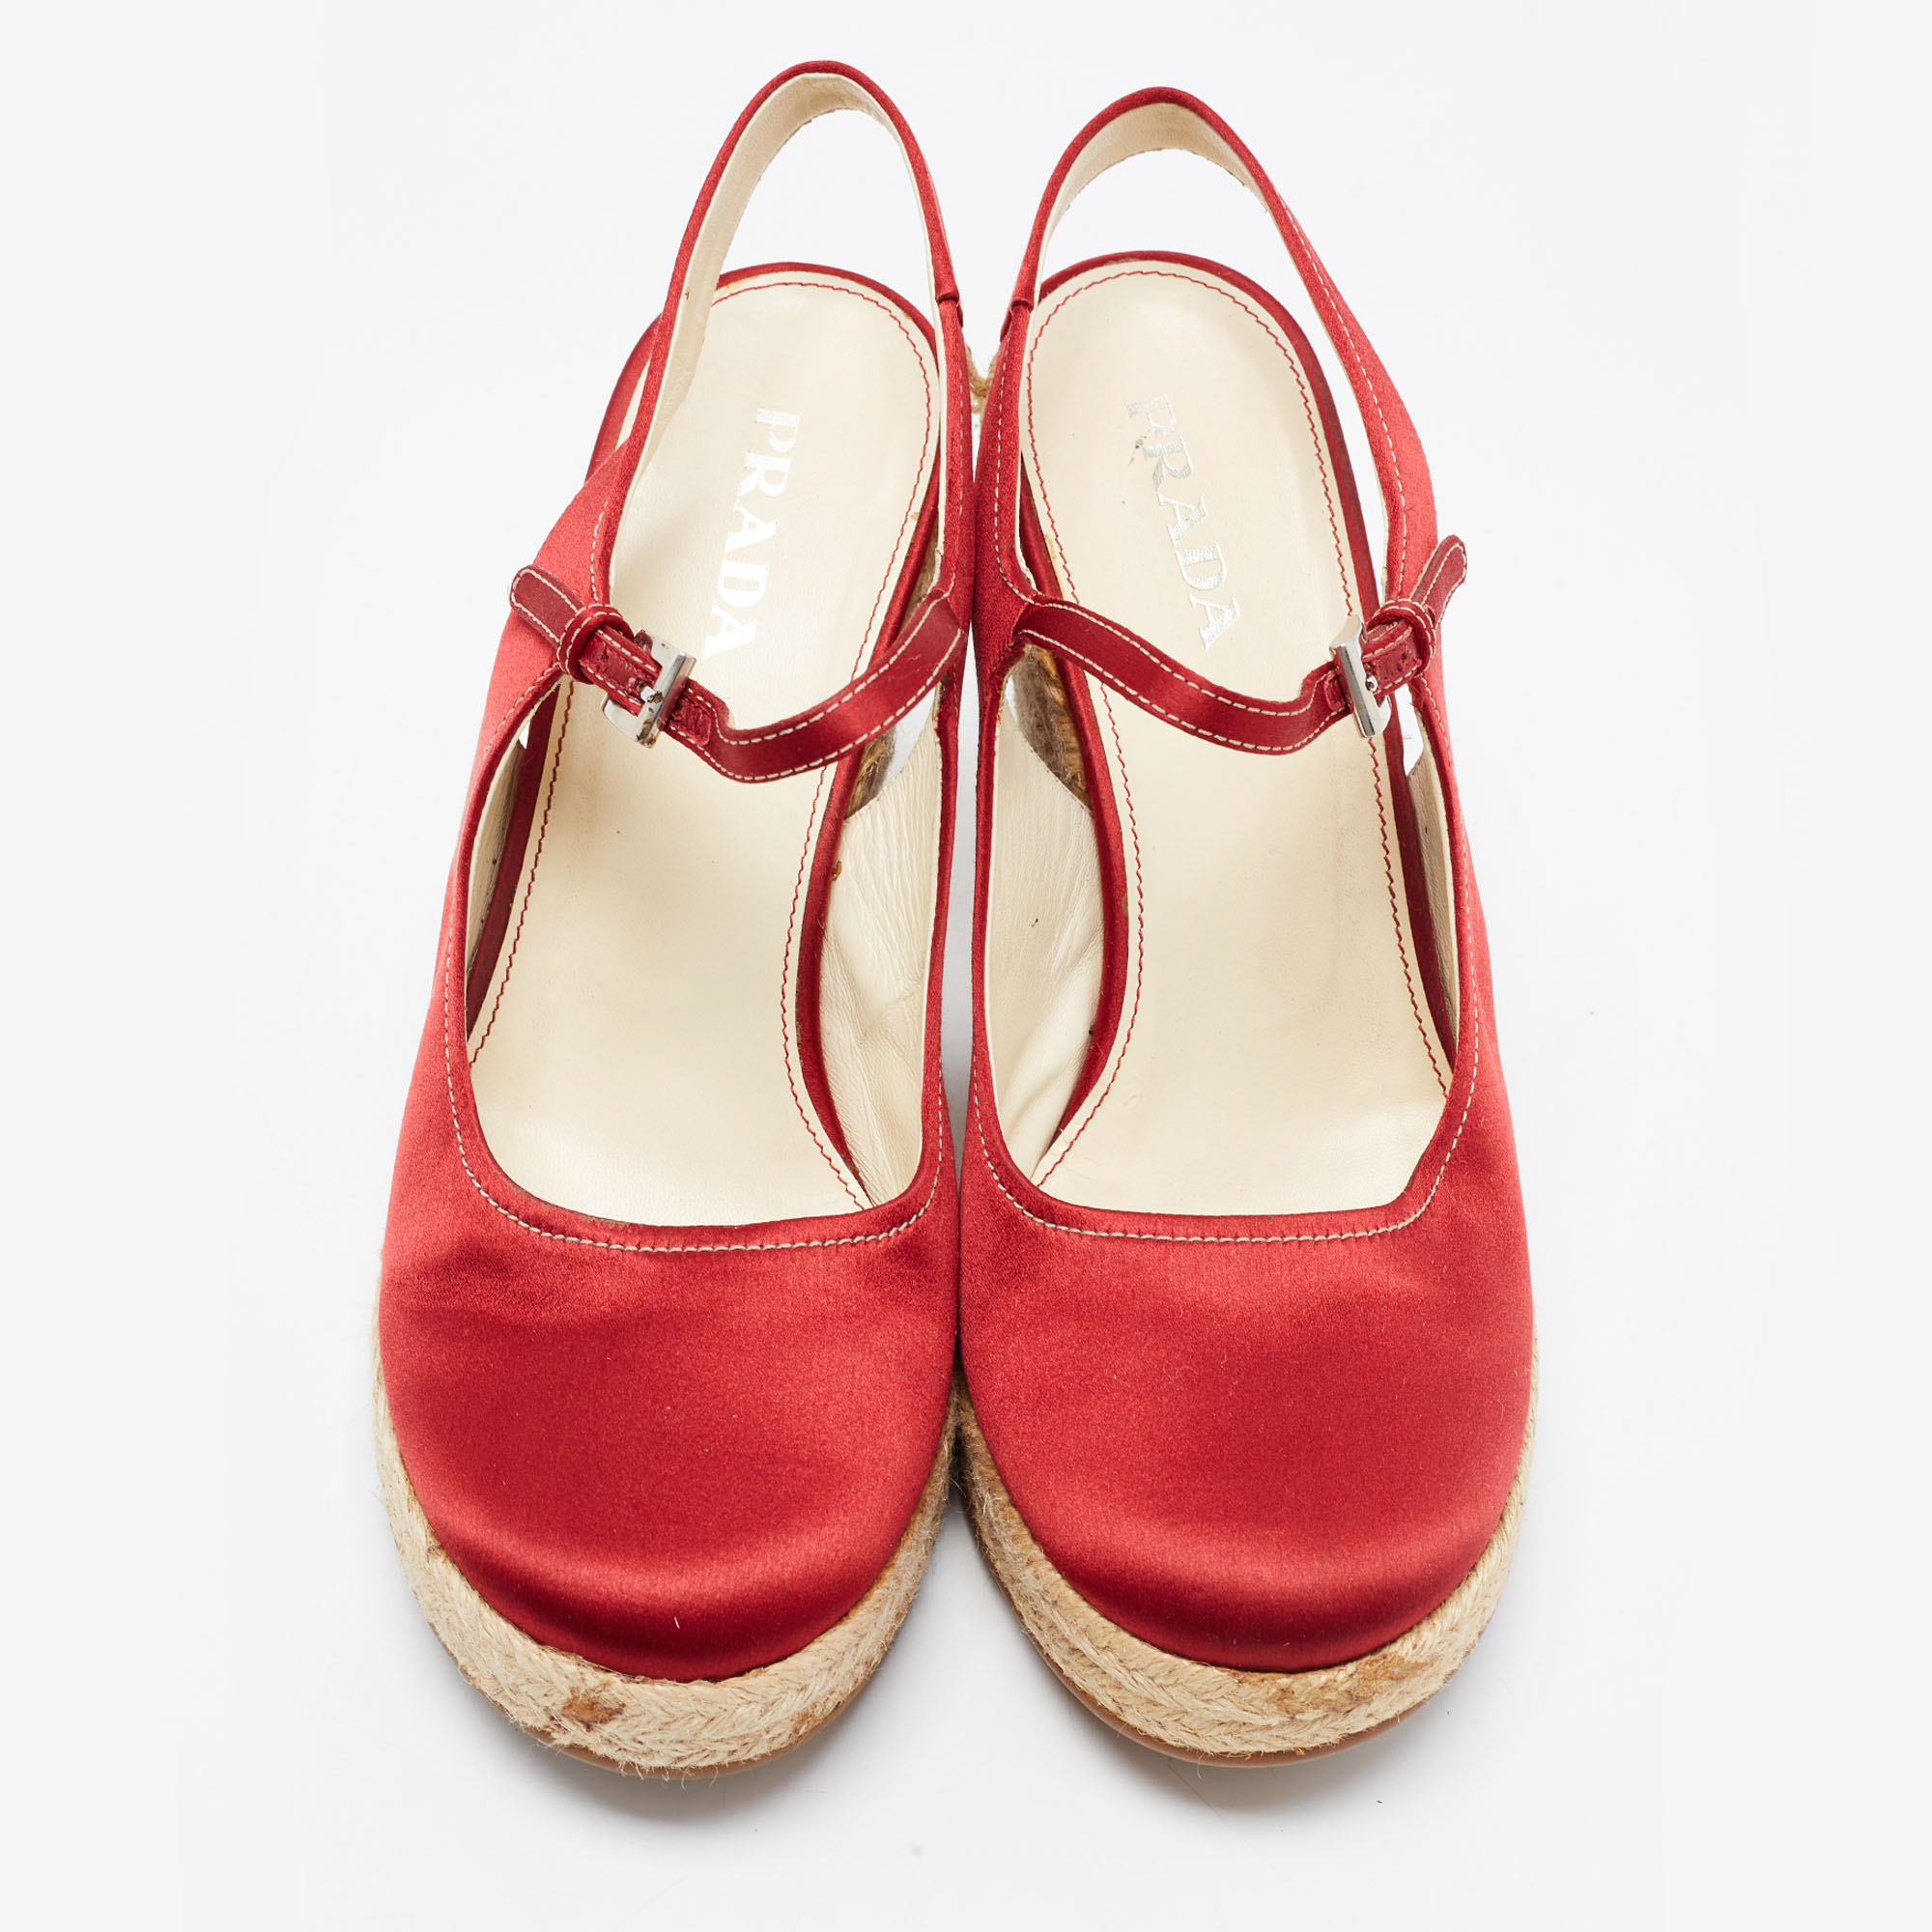 Prada Red Satin Espadrille Platform Wedge Slingback Sandals Size 39